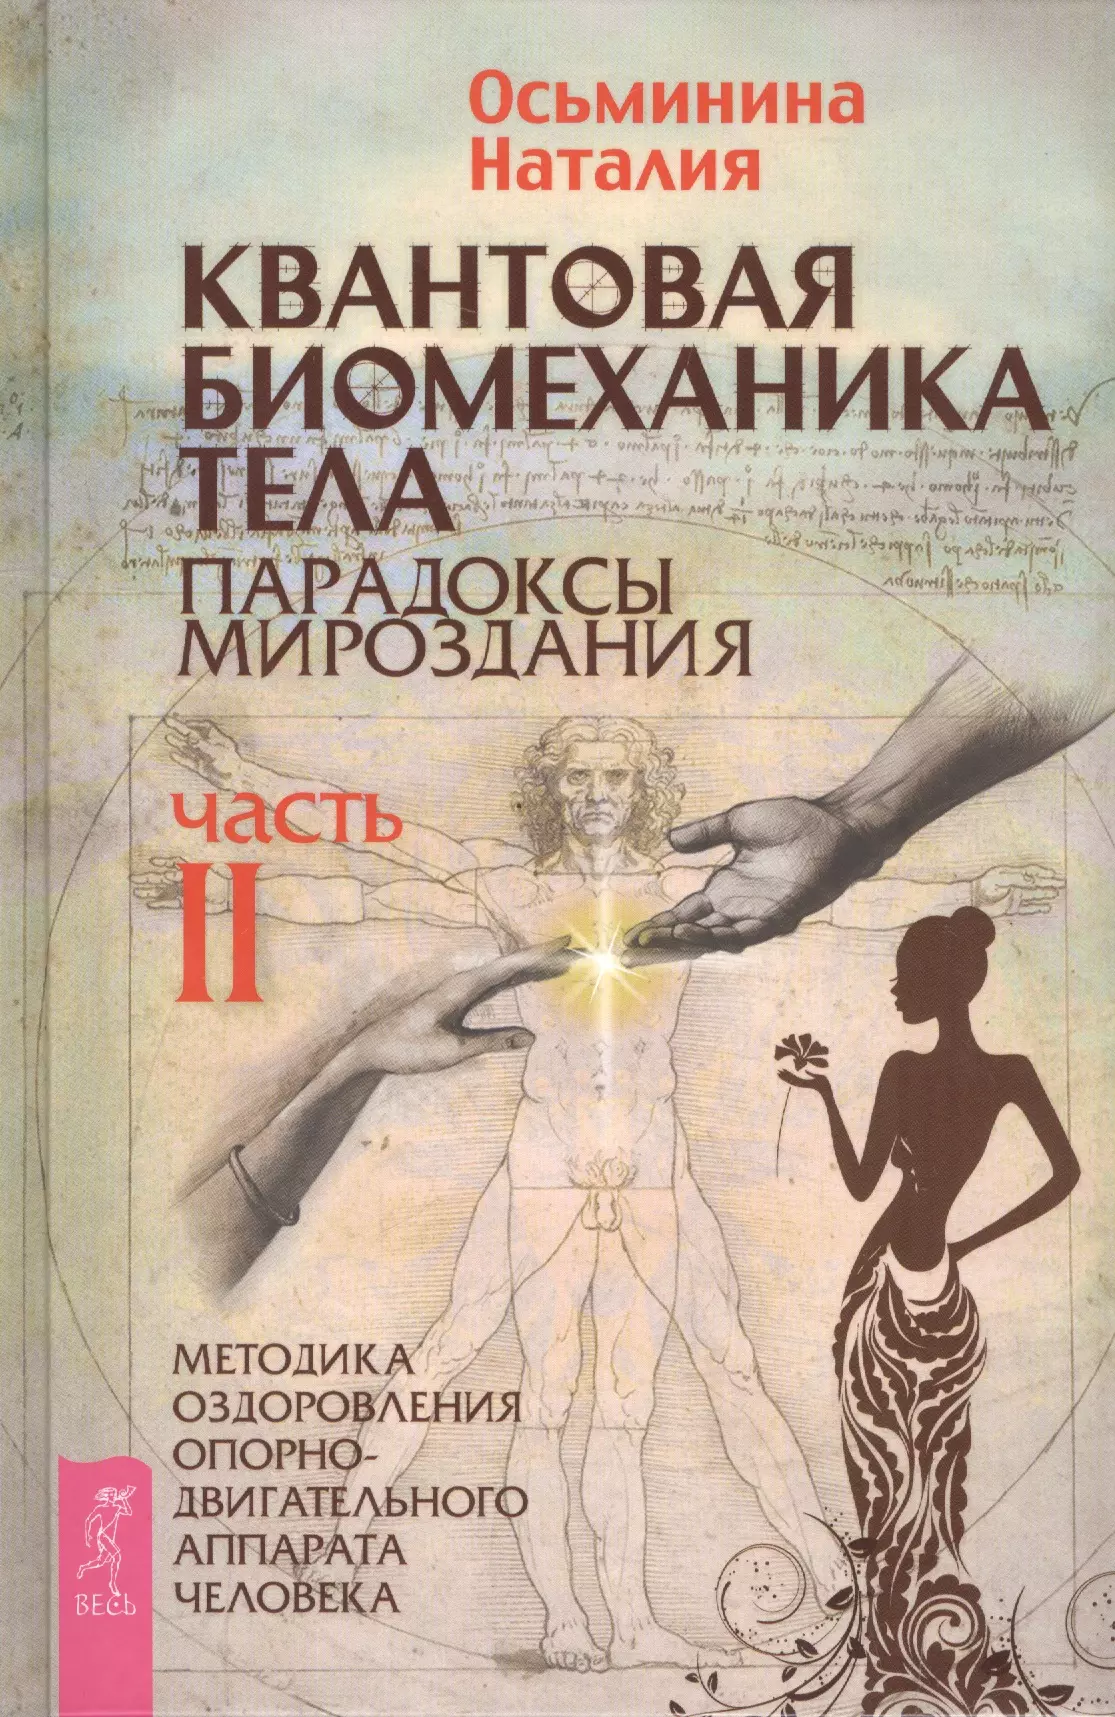 Осьминина Наталия Борисовна - Квантовая биомеханика тела. Методика оздоровления опорно-двигательного аппарата. Часть 2